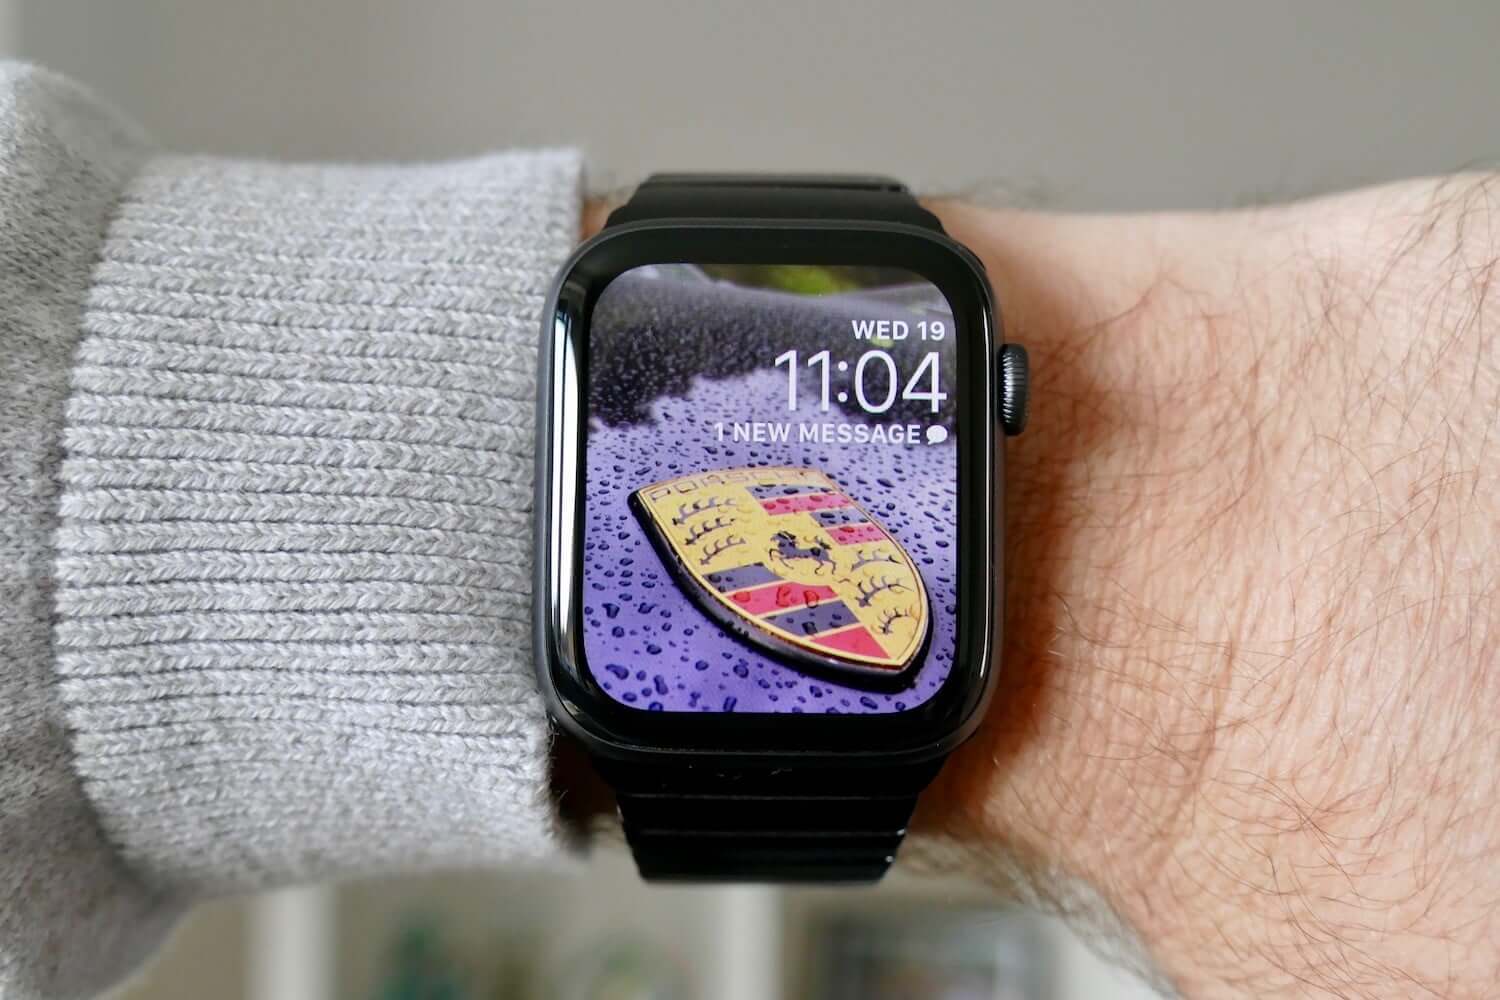 thay đổi hình nền Apple Watch: Bạn đã thực hiện thay đổi hình nền cho chiếc đồng hồ thông minh Apple Watch của mình chưa? Hãy xem ngay hình ảnh liên quan để khám phá những lựa chọn hình nền đẹp mắt và độc đáo. Với những hình nền đa dạng này, bạn sẽ không phải lo lắng về sự nhàm chán của màn hình Apple Watch của mình!